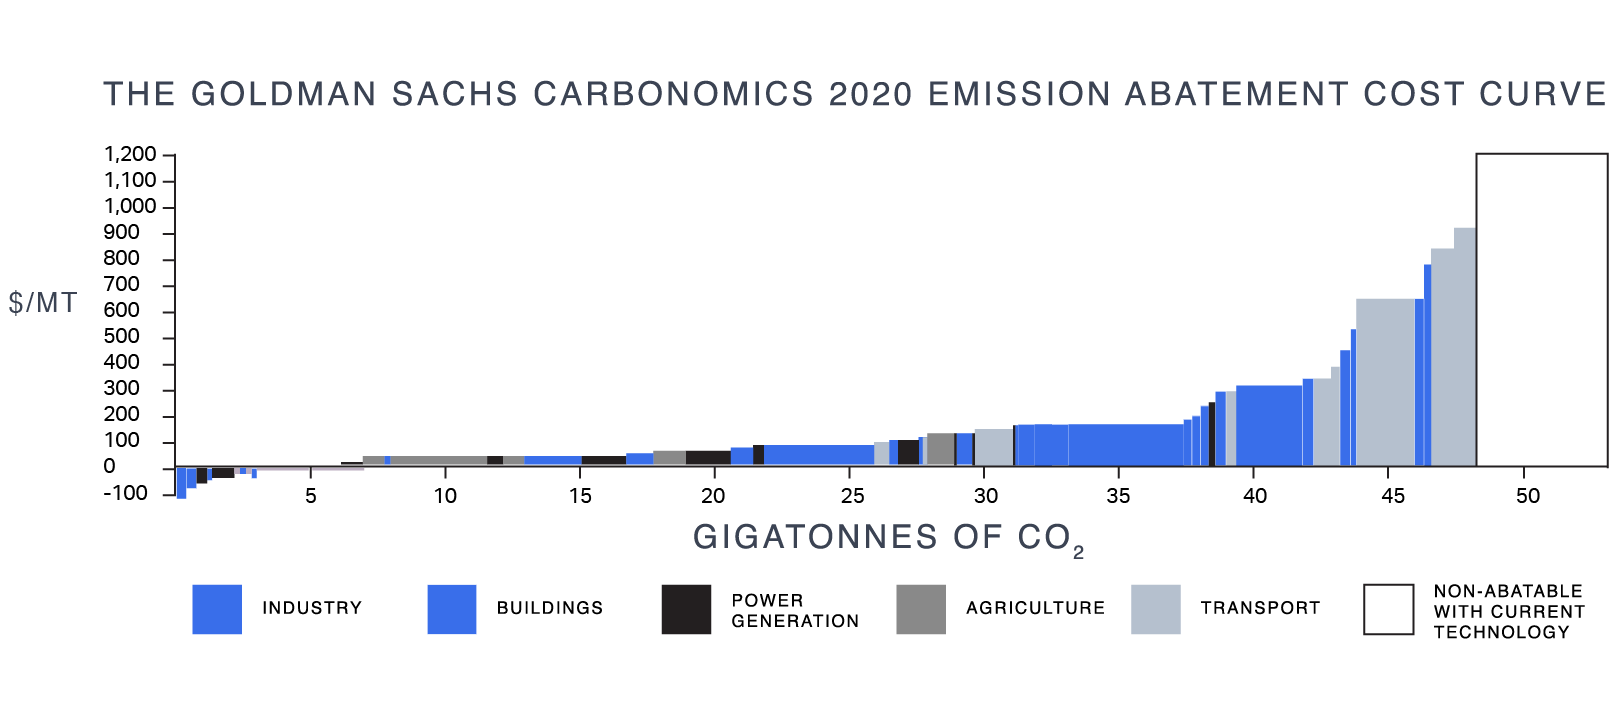 The Goldman Sachs Carbonomics 2020 Emission Abatement cost curve